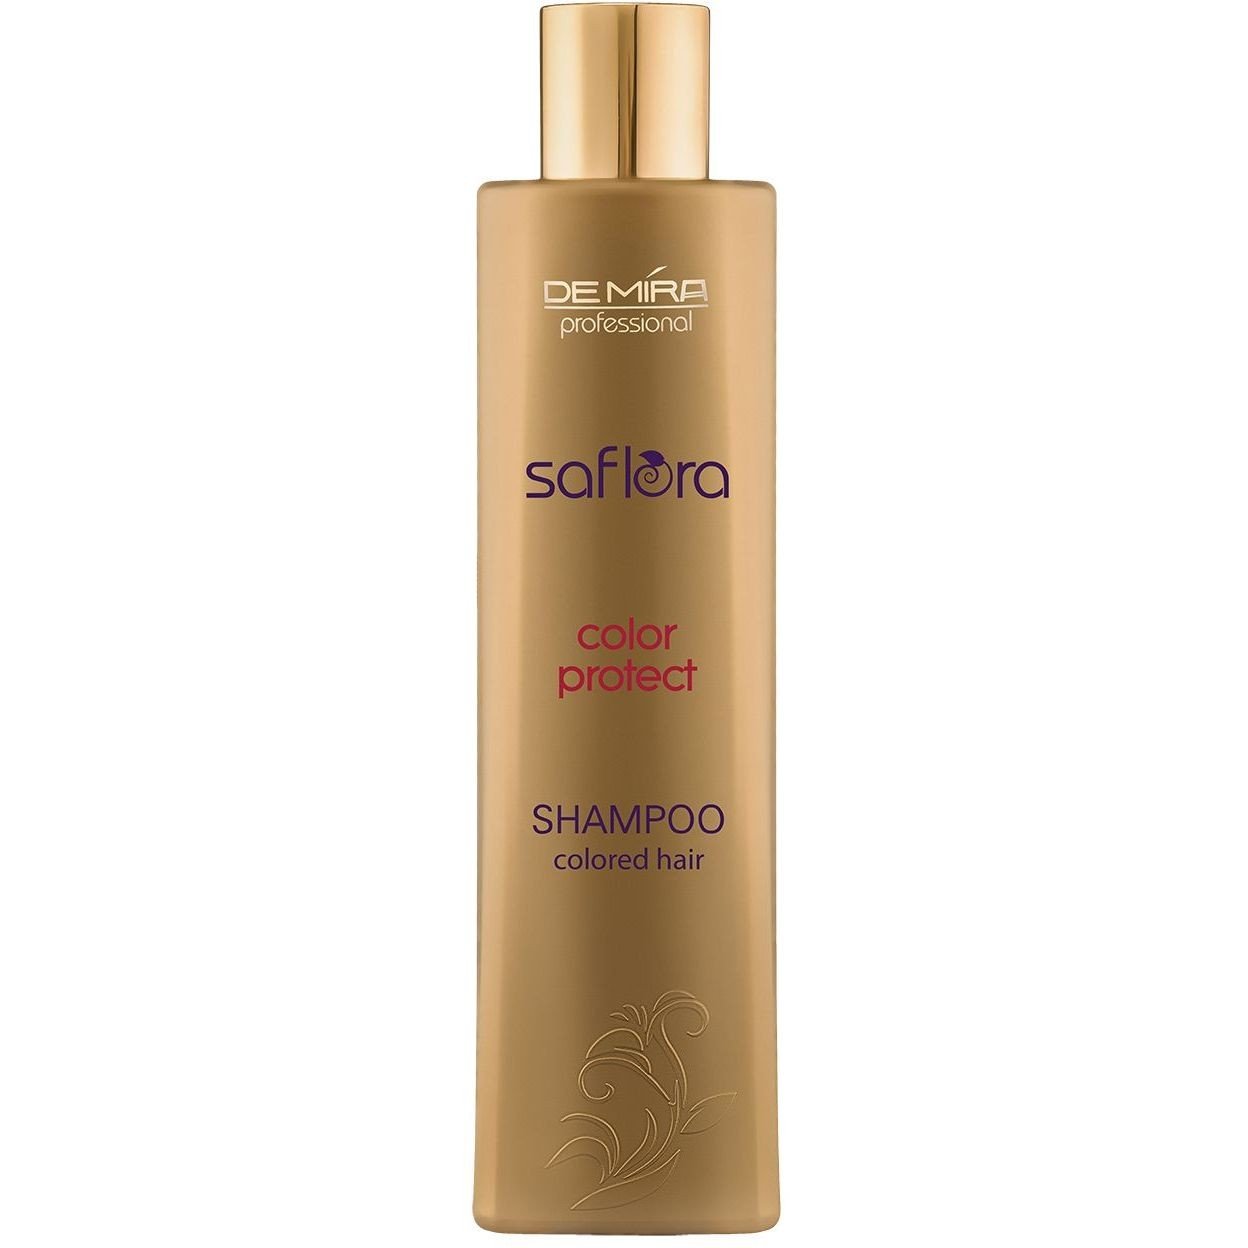 Шампунь DeMira Professional Saflora Color Protect для окрашенных волос, 300 мл - фото 1